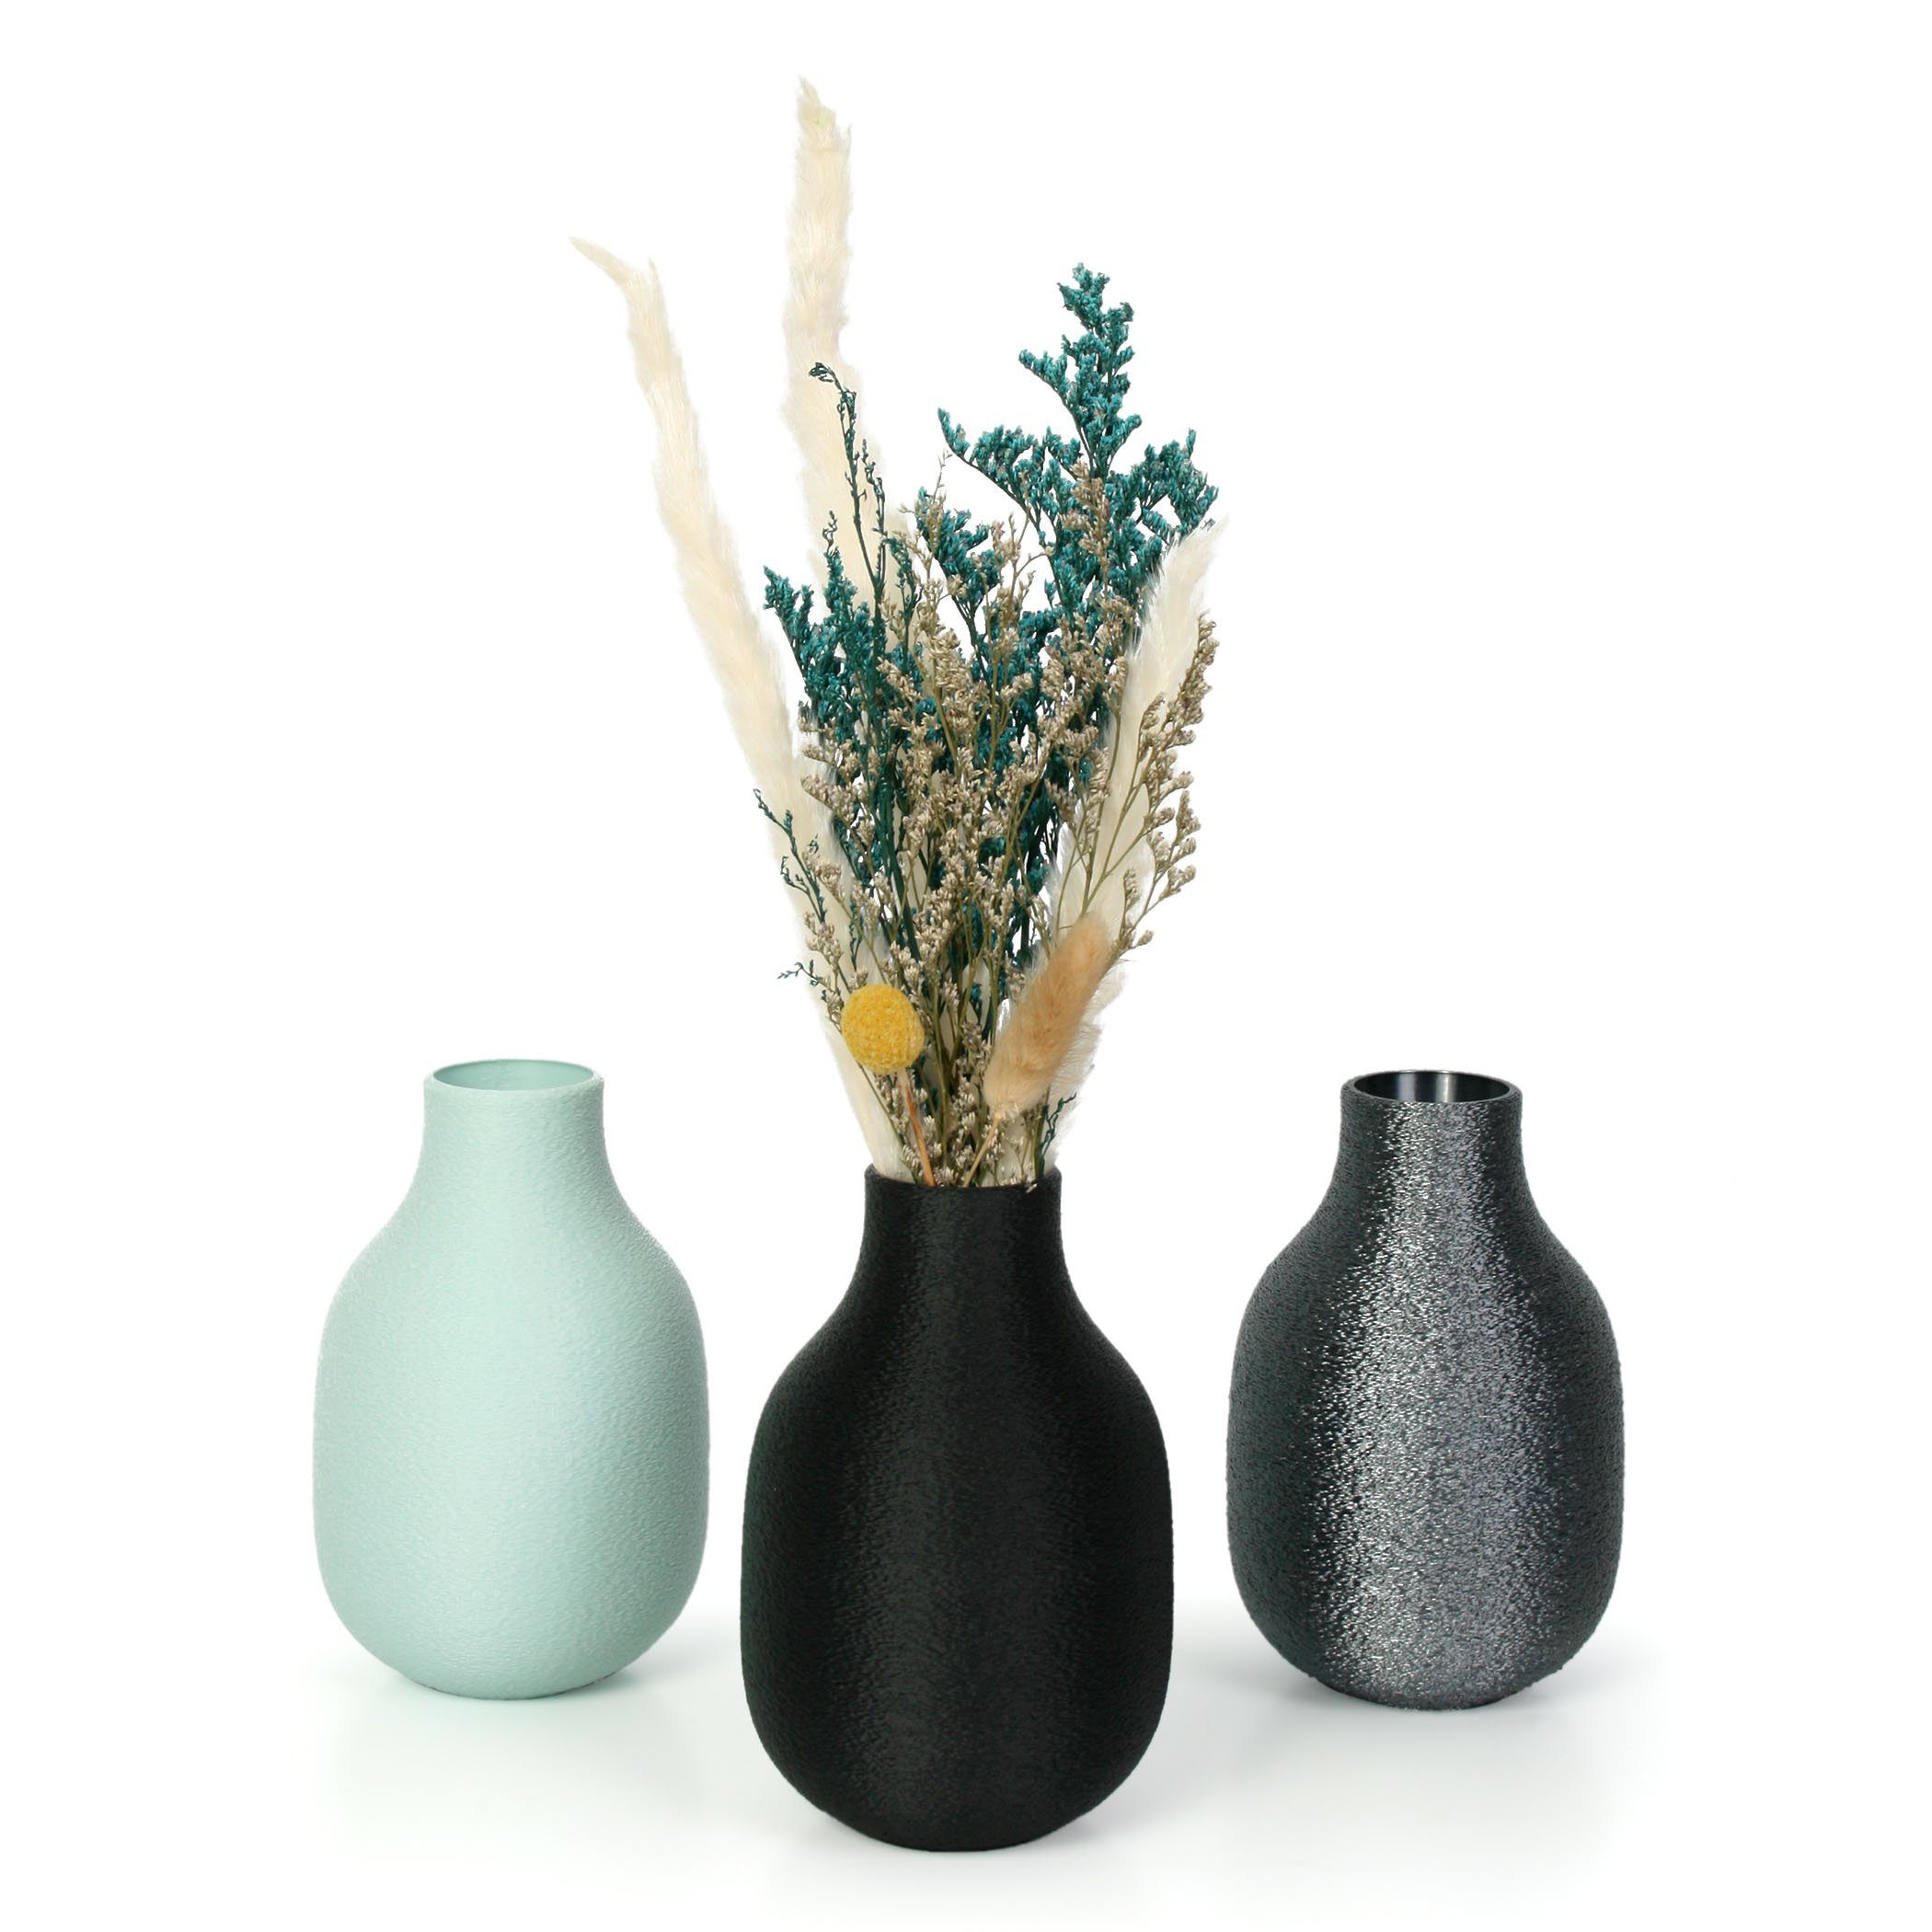 Bio-Kunststoff, wasserdicht bruchsicher Vase Feder Designer Kreative Violet aus nachwachsenden Dekorative aus – Rohstoffen; Dekovase & Blumenvase